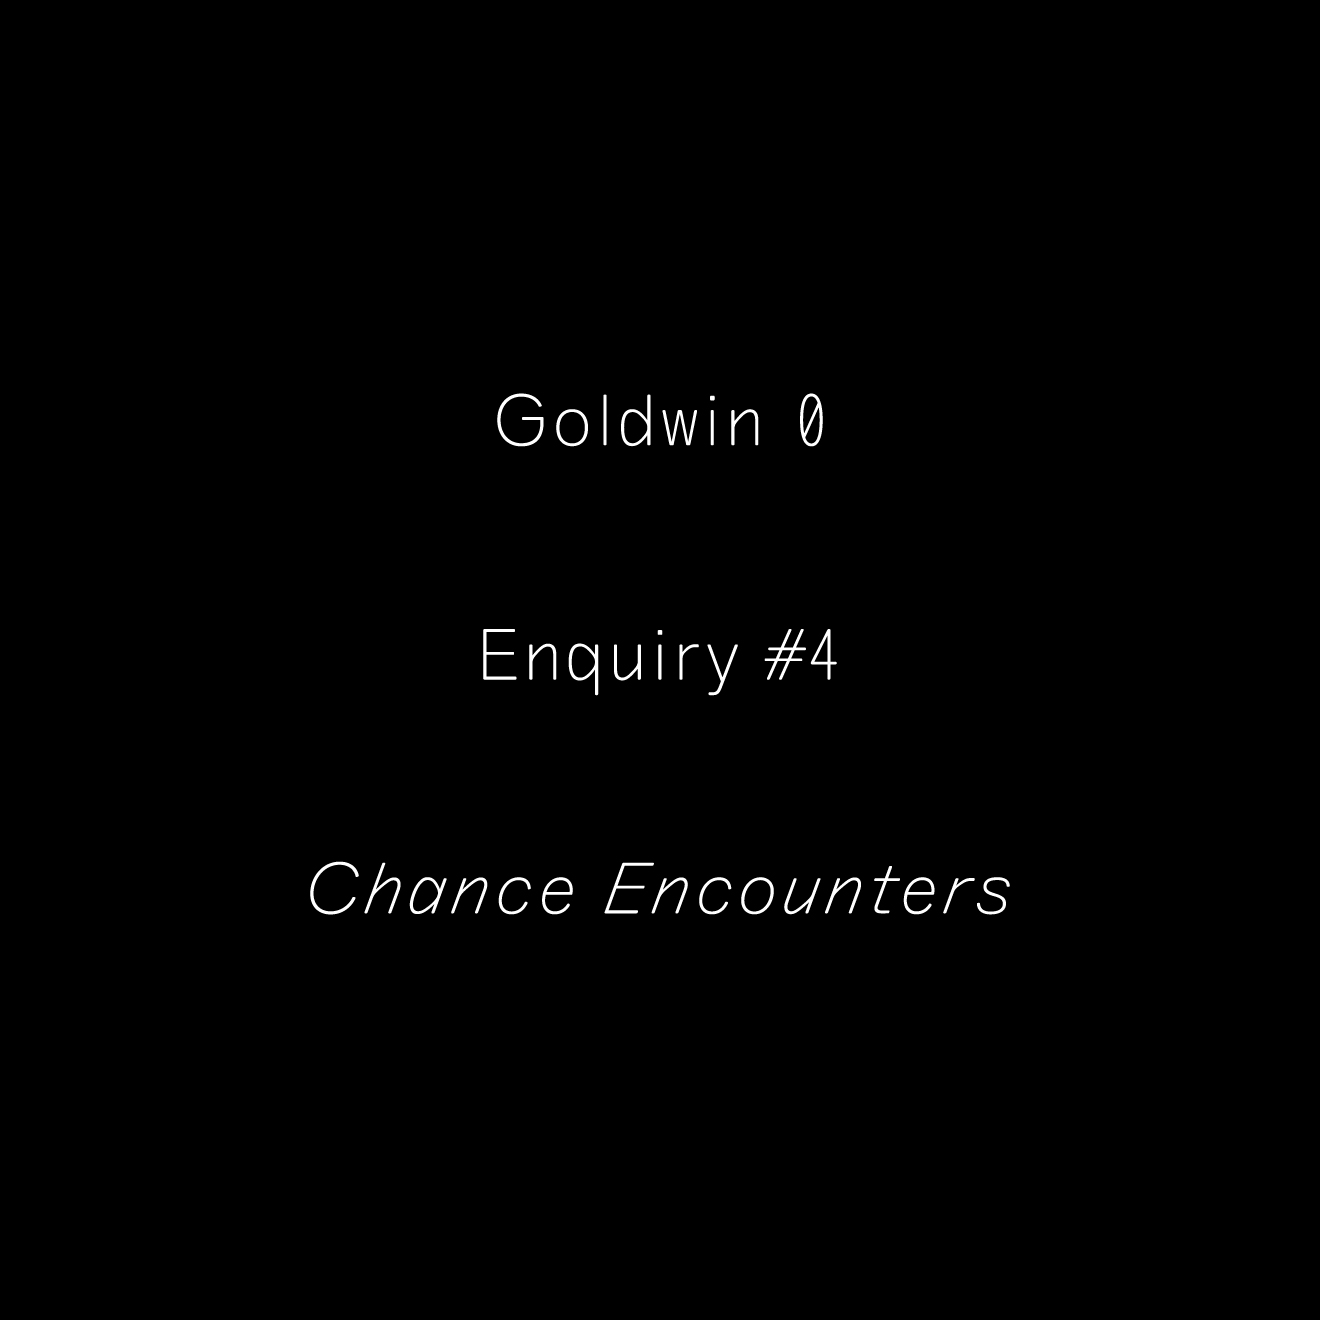 Goldwin 0 Enquiry #4